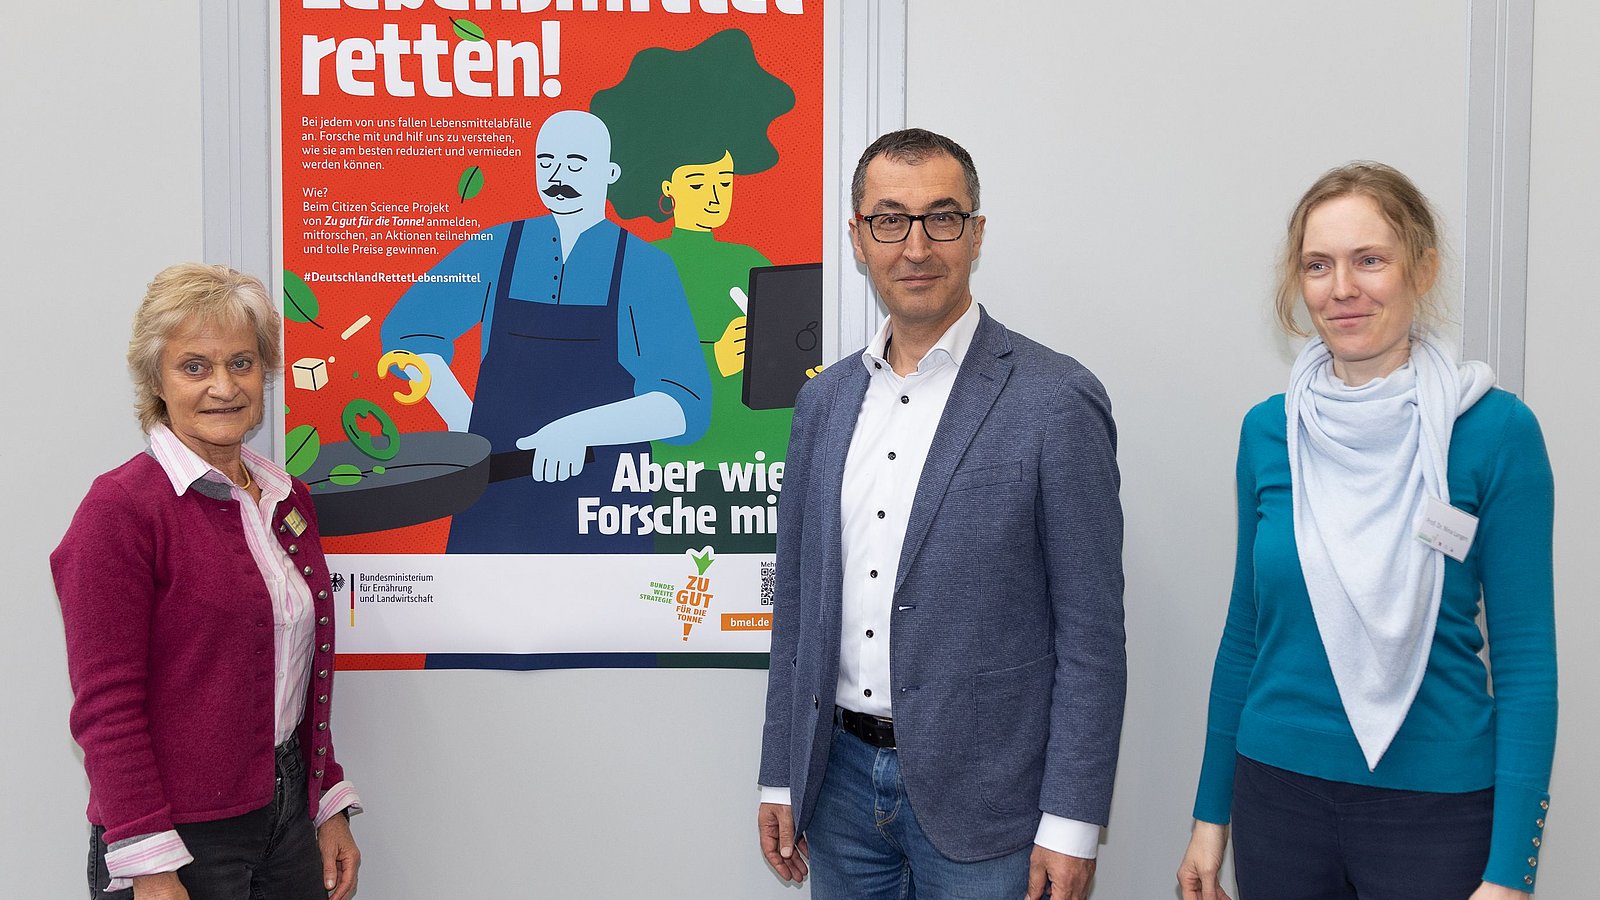 Von links nach rechts sind auf dem Foto Andrea Lenkert-Hörrmann von Slow Food, Bundesminister Cem Özdemir und Nina Langen von der TU Berlin zu sehen. Im Hintergrund hängt ein Plakat des Citizen Science Projekts.